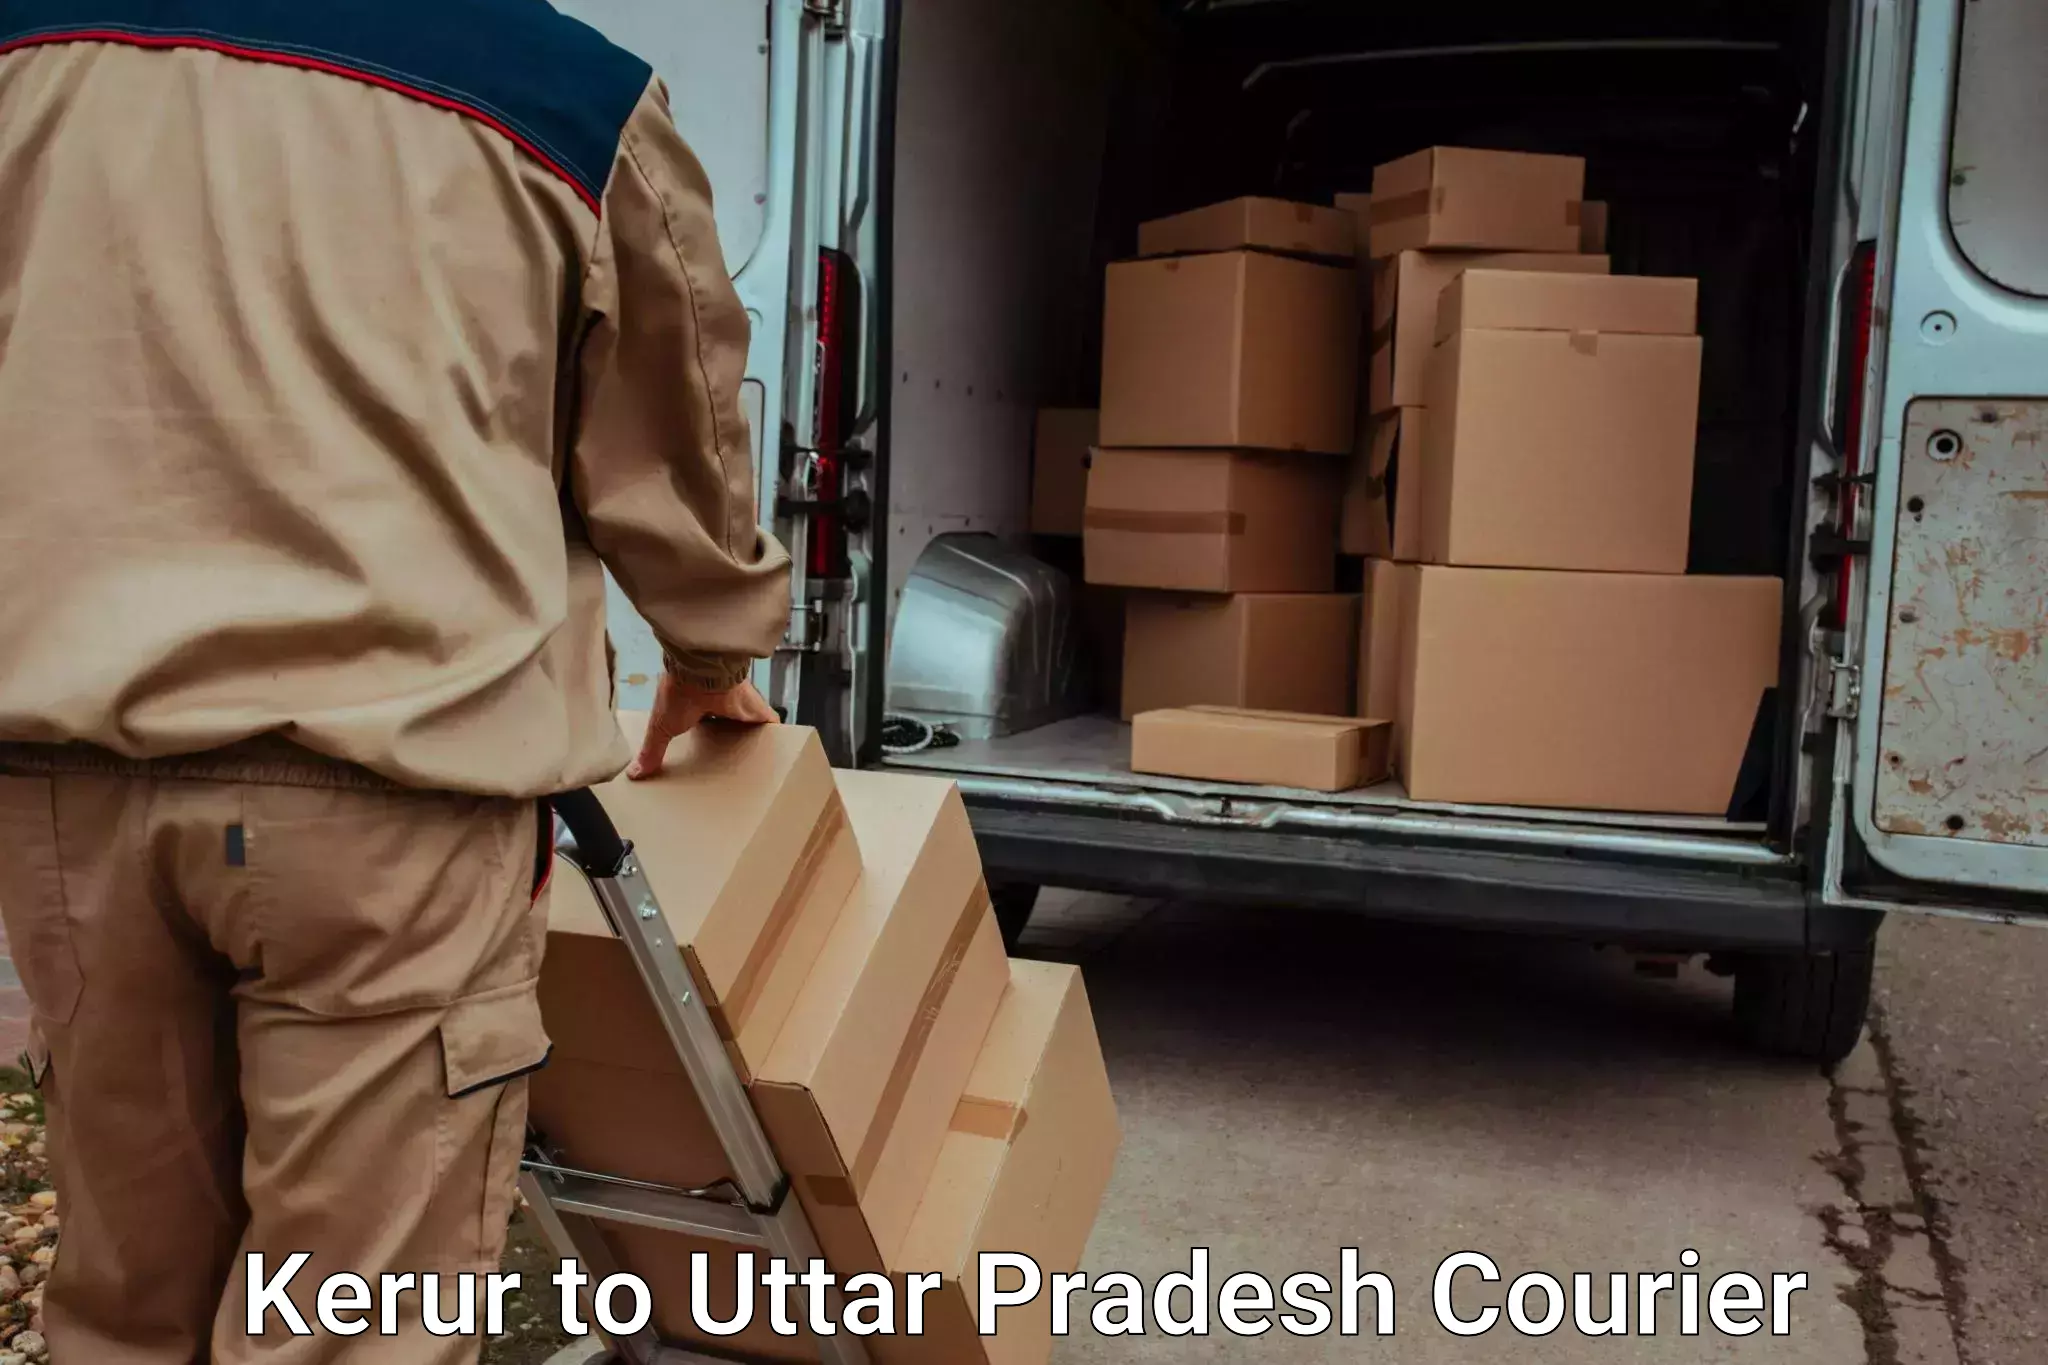 Holiday season luggage delivery Kerur to Thakurdwara